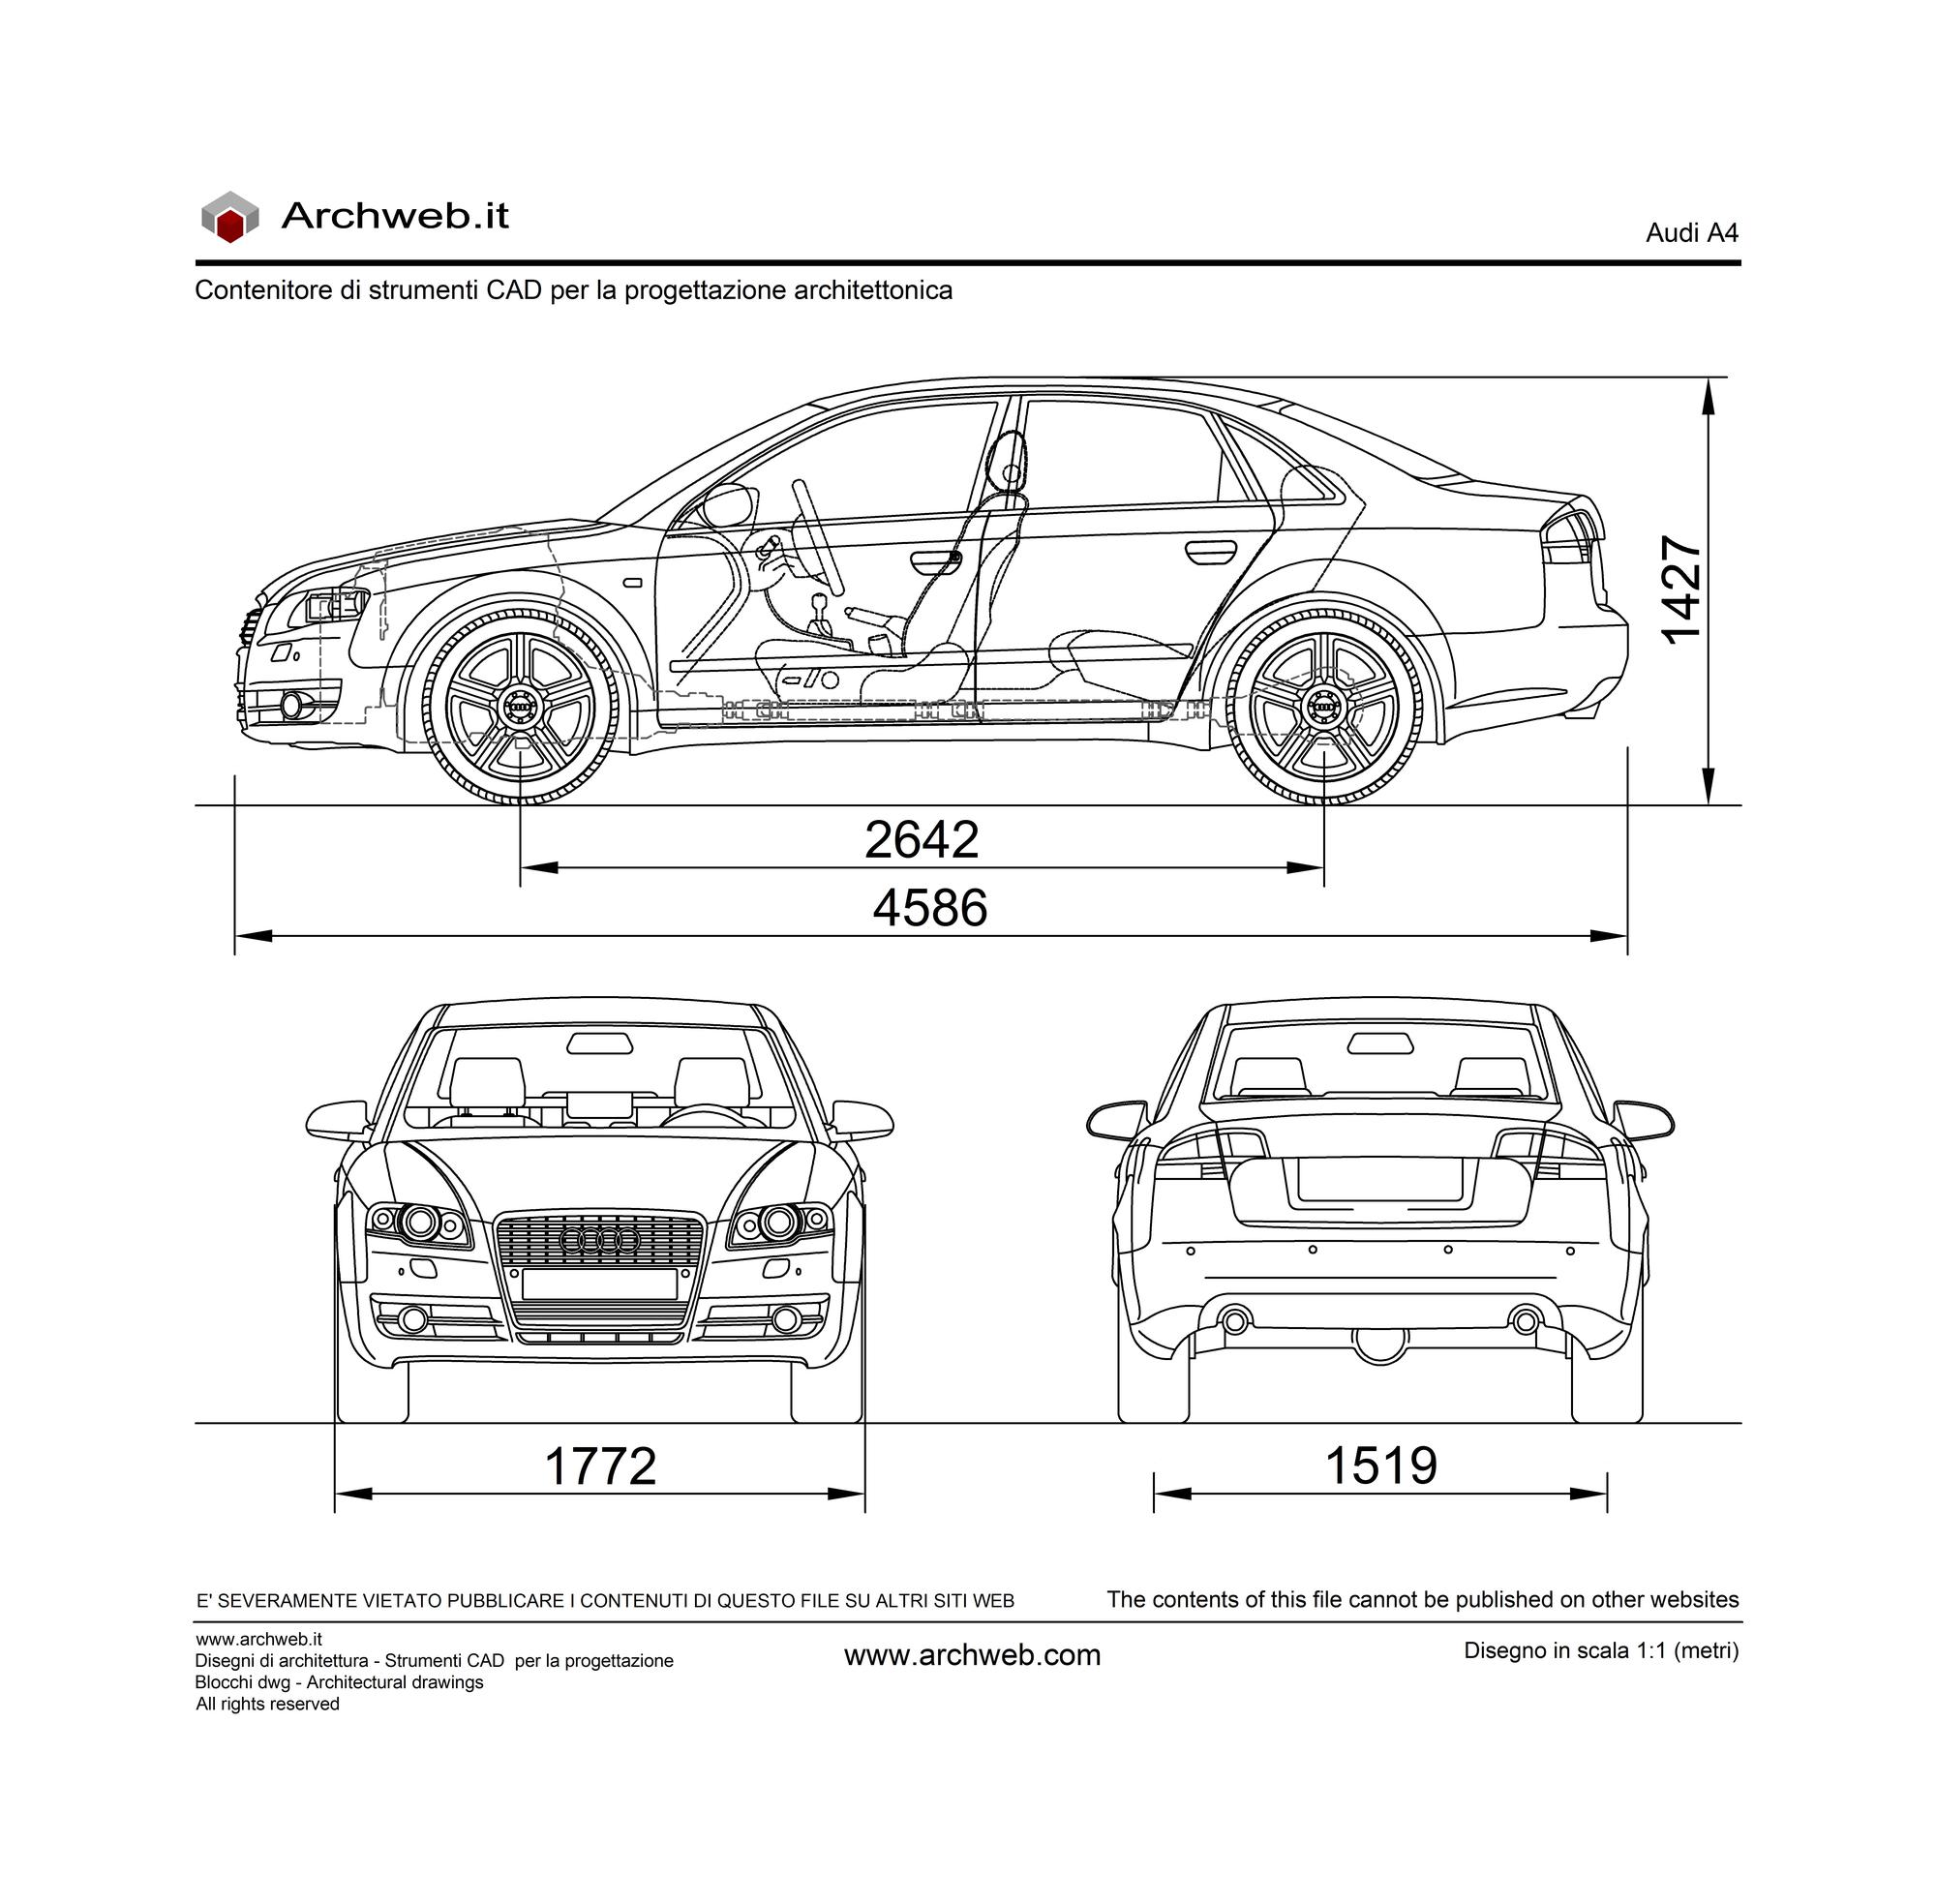 Audi A4 dwg